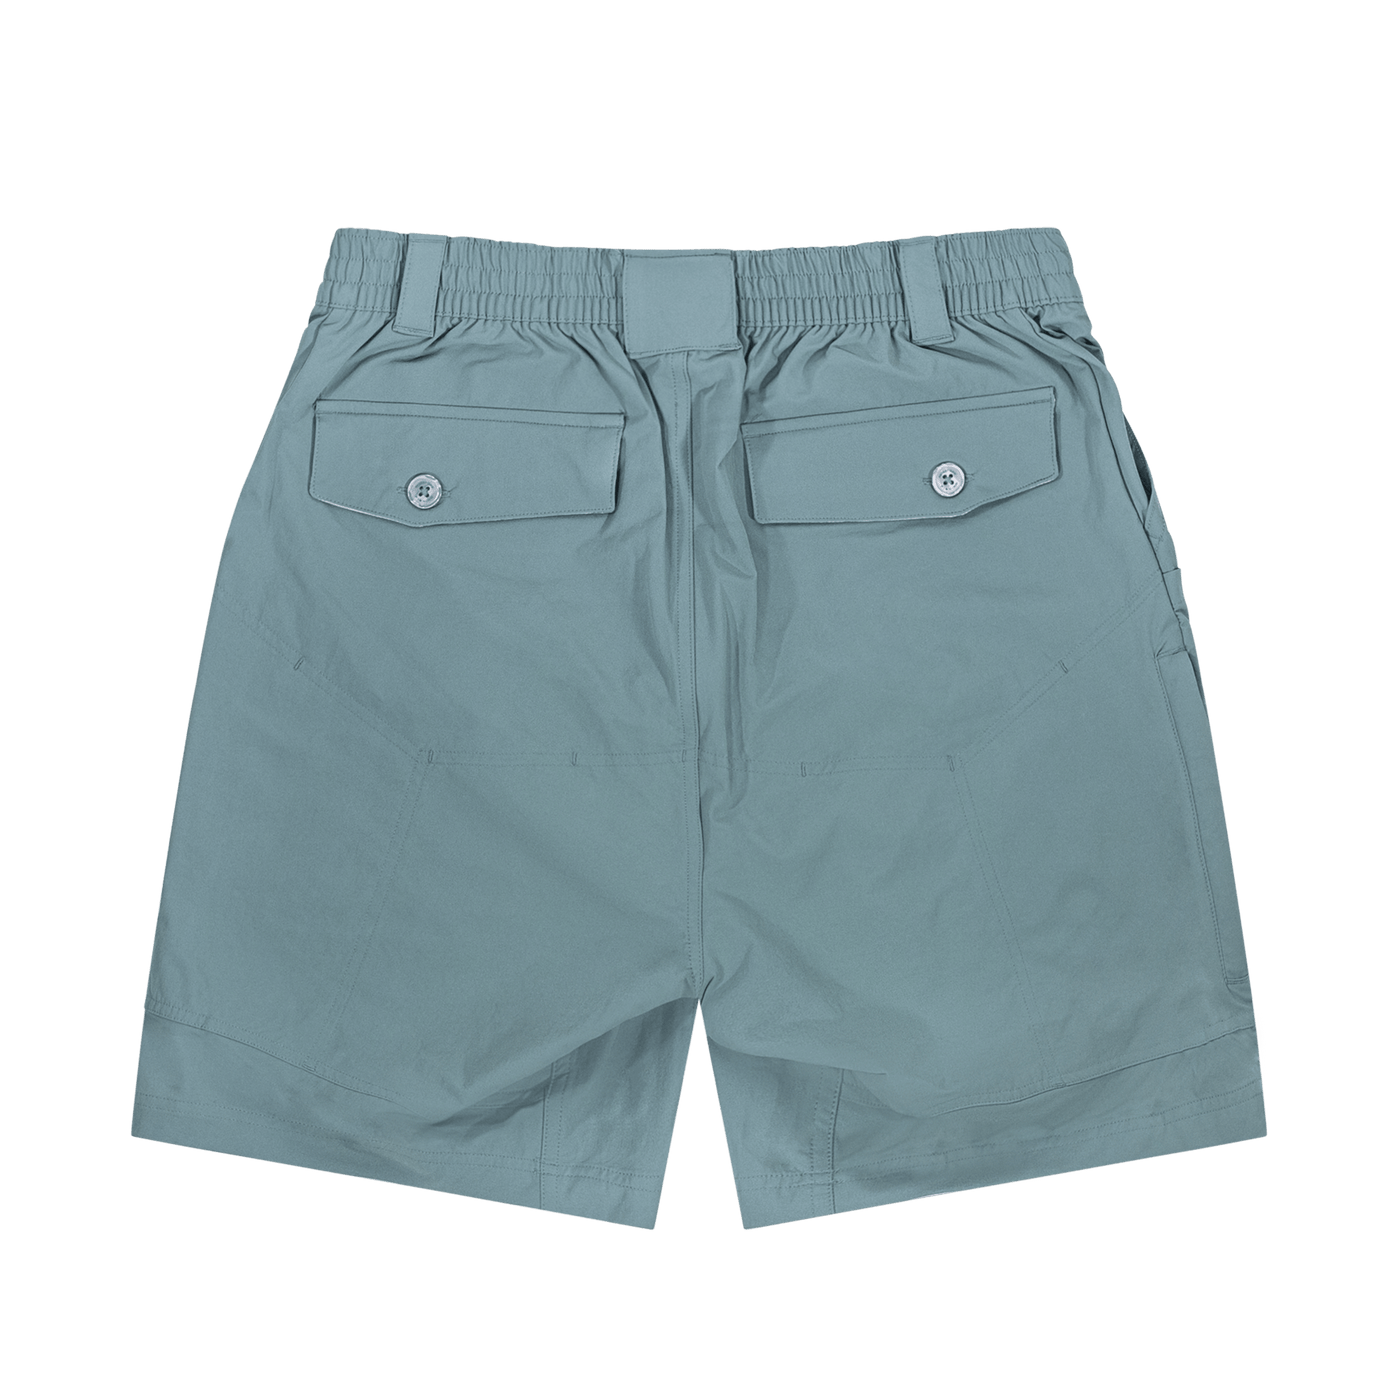 Mossy Oak Men's XTR Fishing Shorts – The Mossy Oak Store